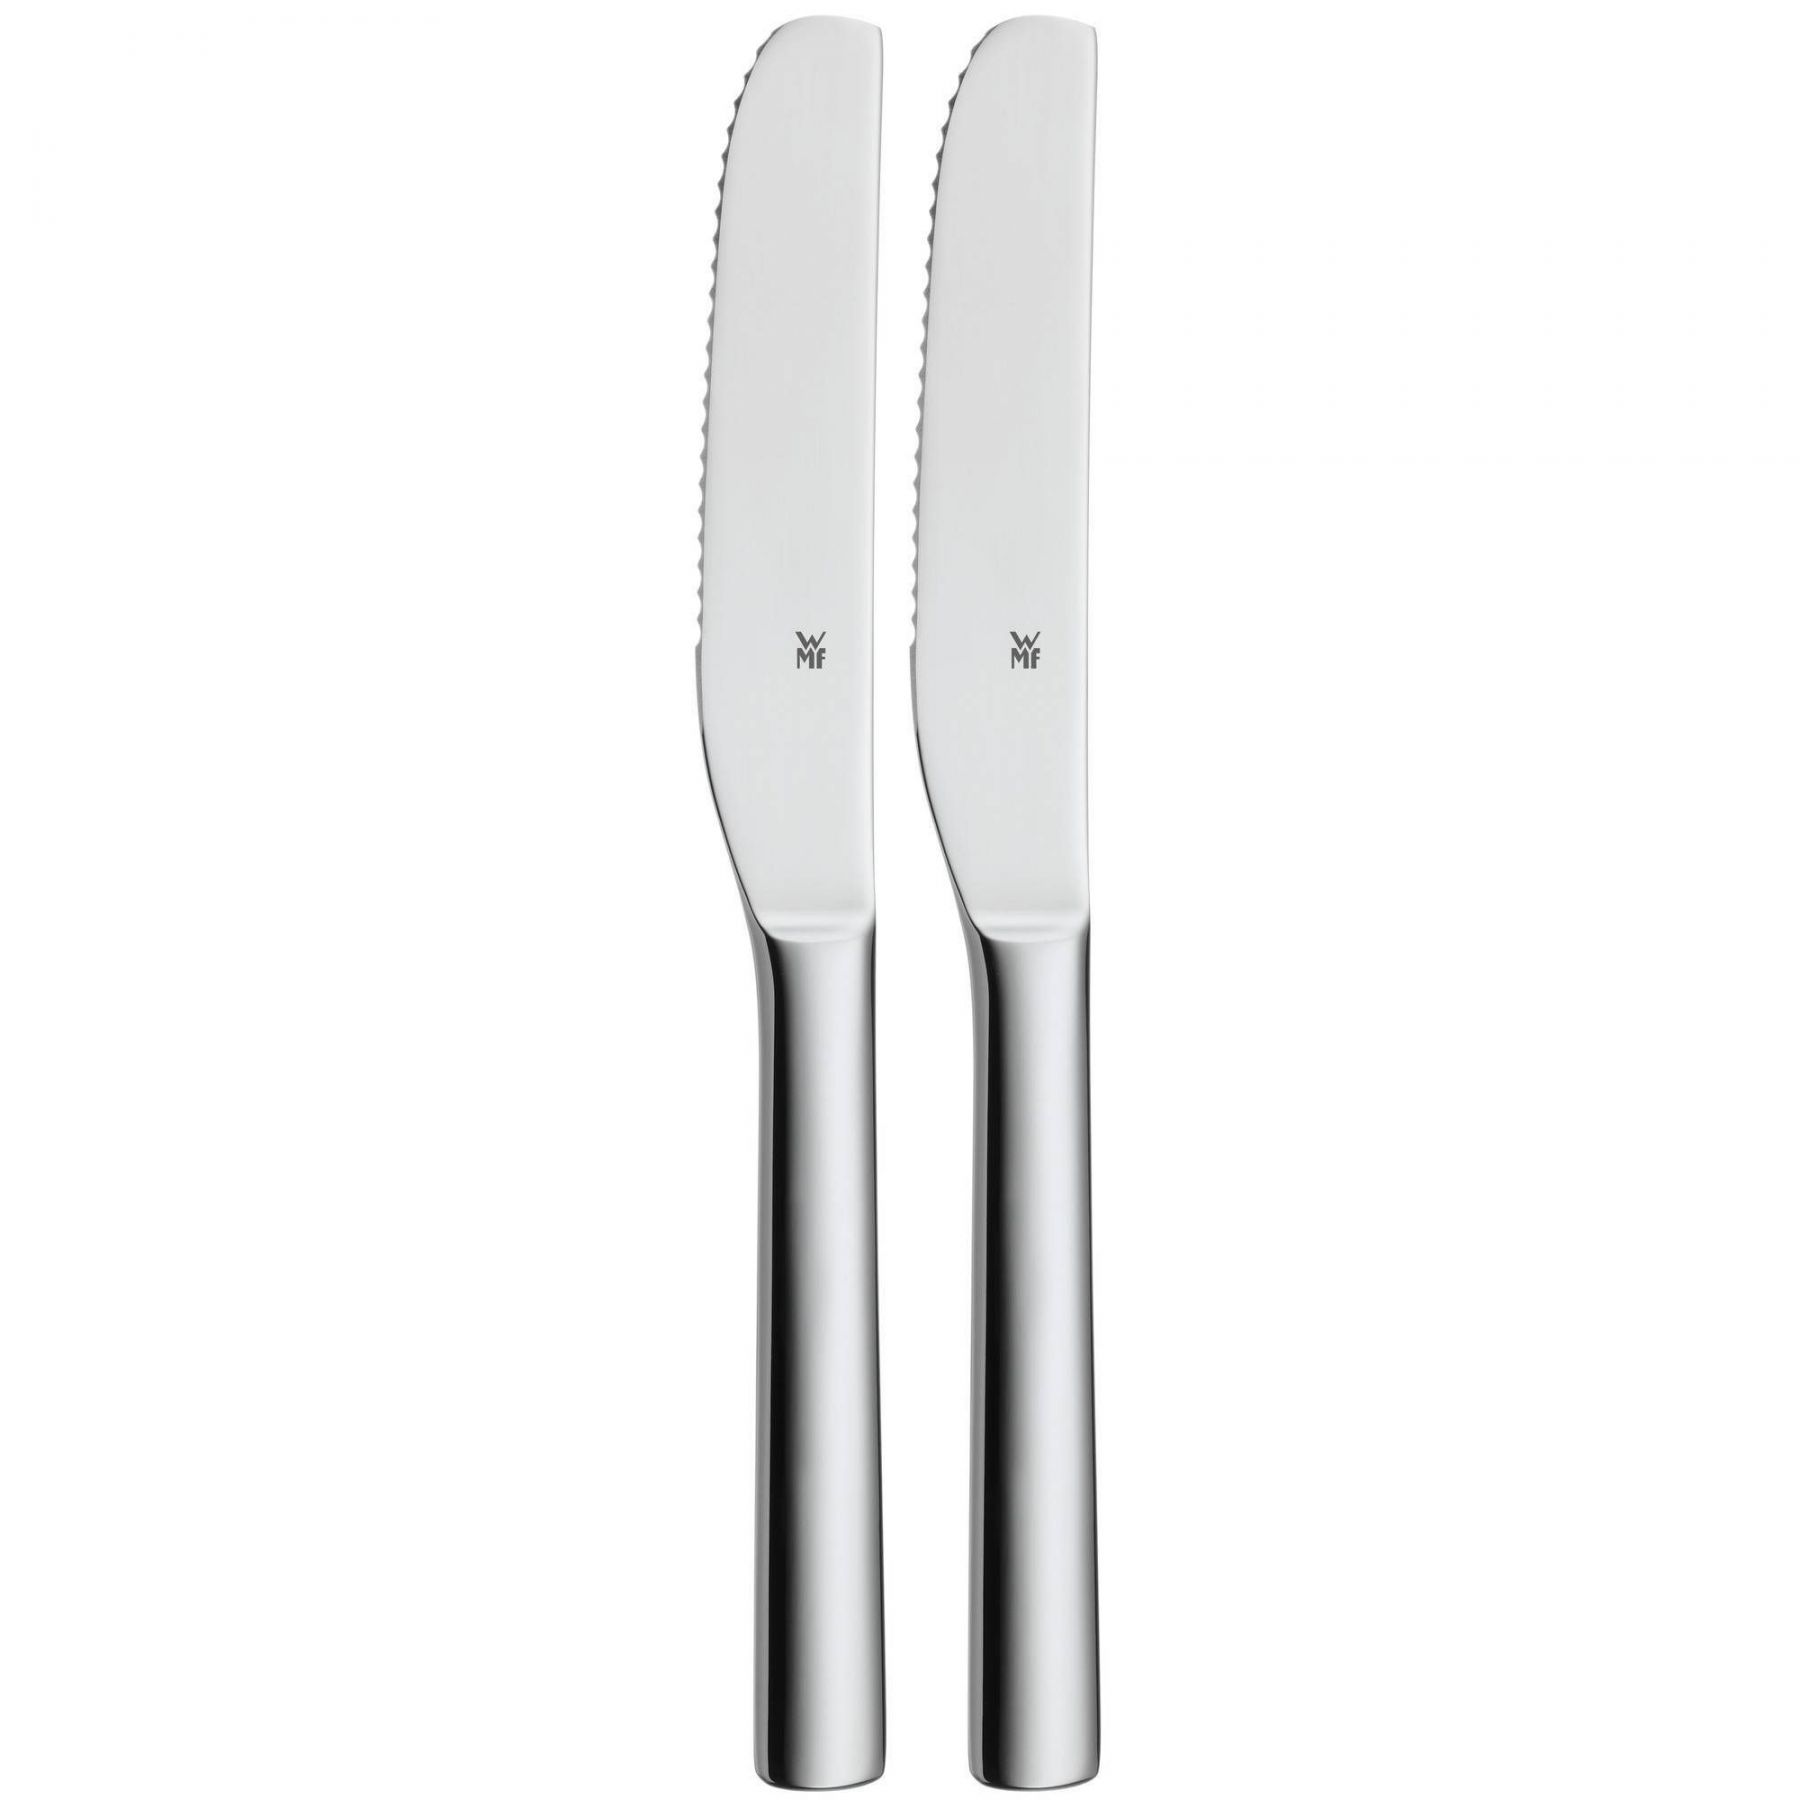 Sada 2 nožů z nerezové oceli Cromargan® WMF Nuova, 19,5 cm - Chefshop.cz